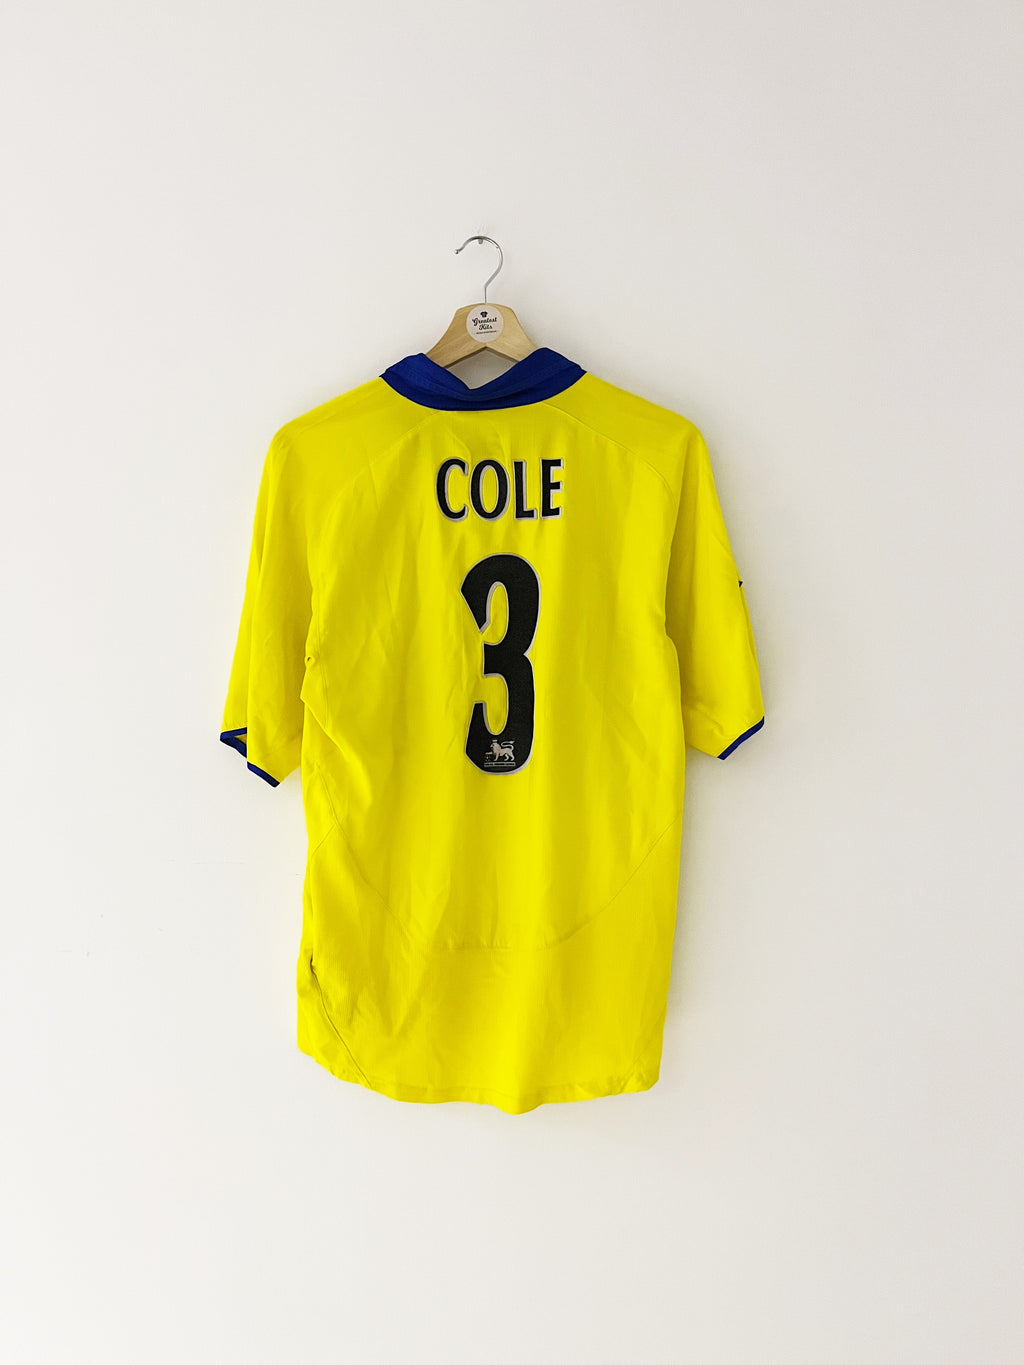 2003/05 Maillot extérieur Arsenal Cole #3 (S) 8.5/10